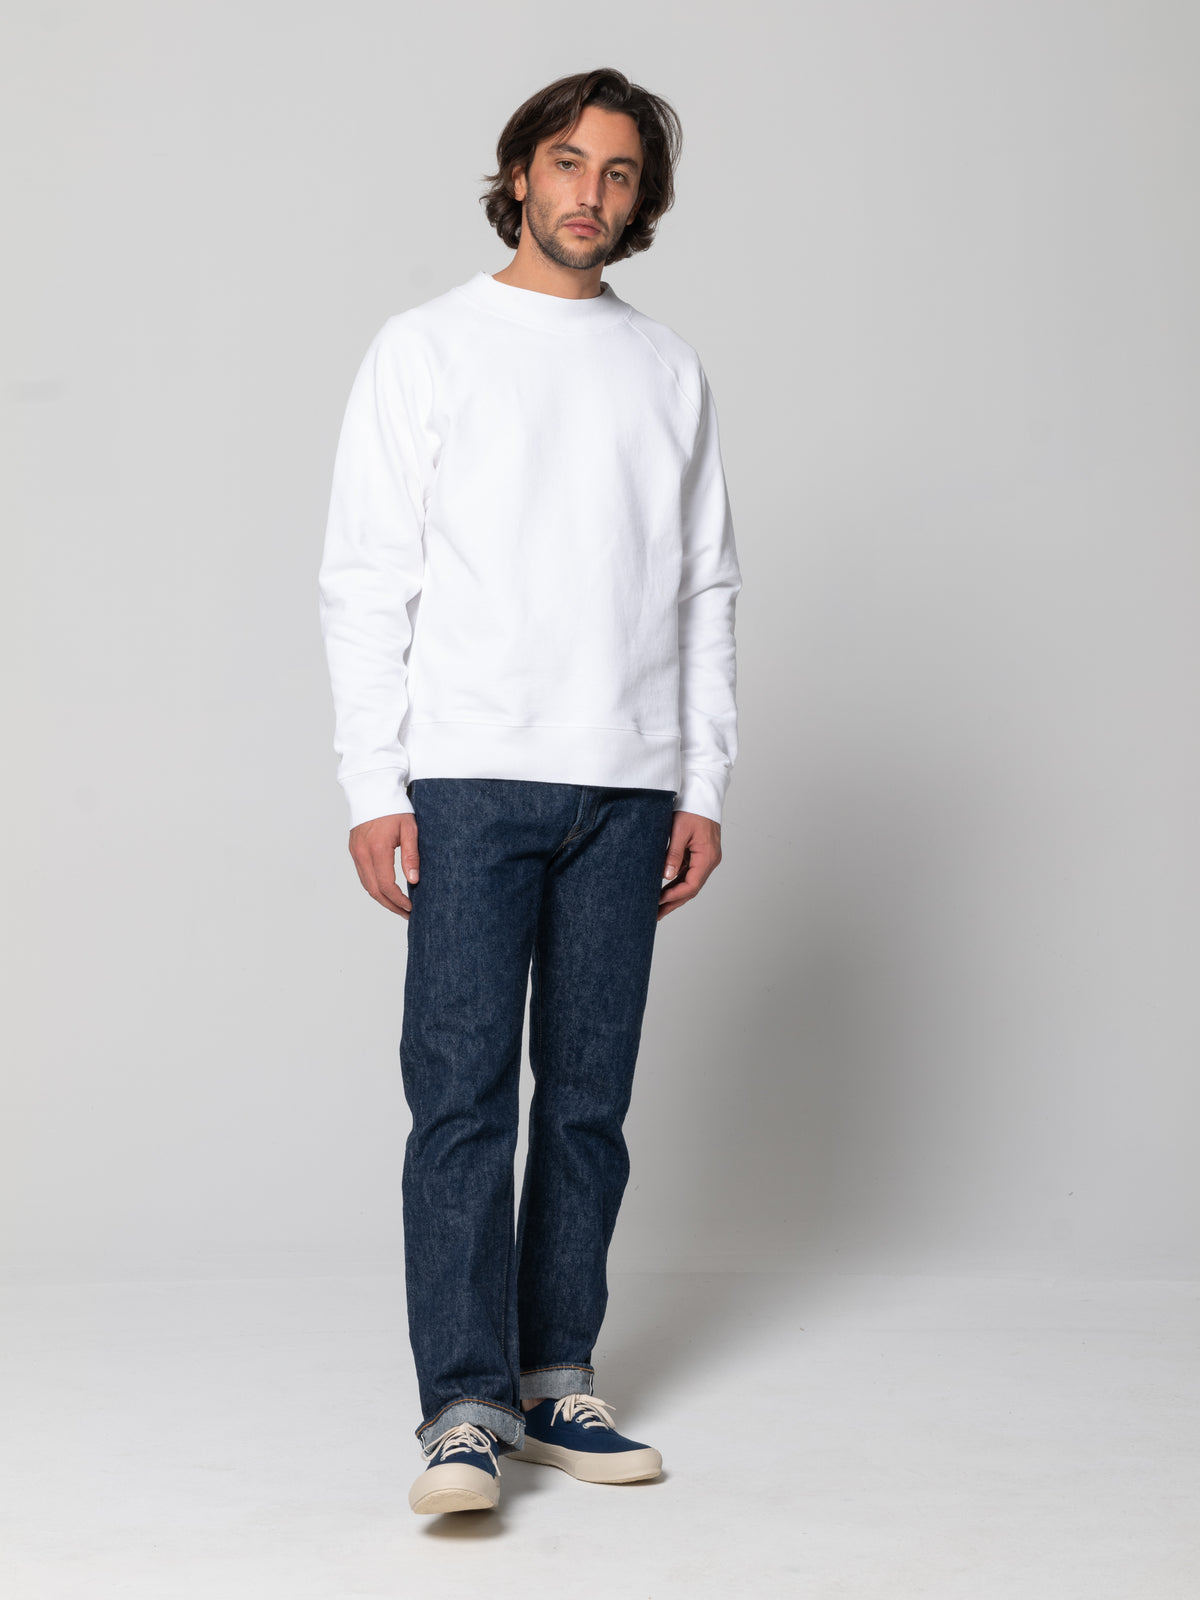 Sweatshirt en coton brut épais. Emmanchure raglan. Coupe ample.  Fabriqué au Portugal.  100% Coton.